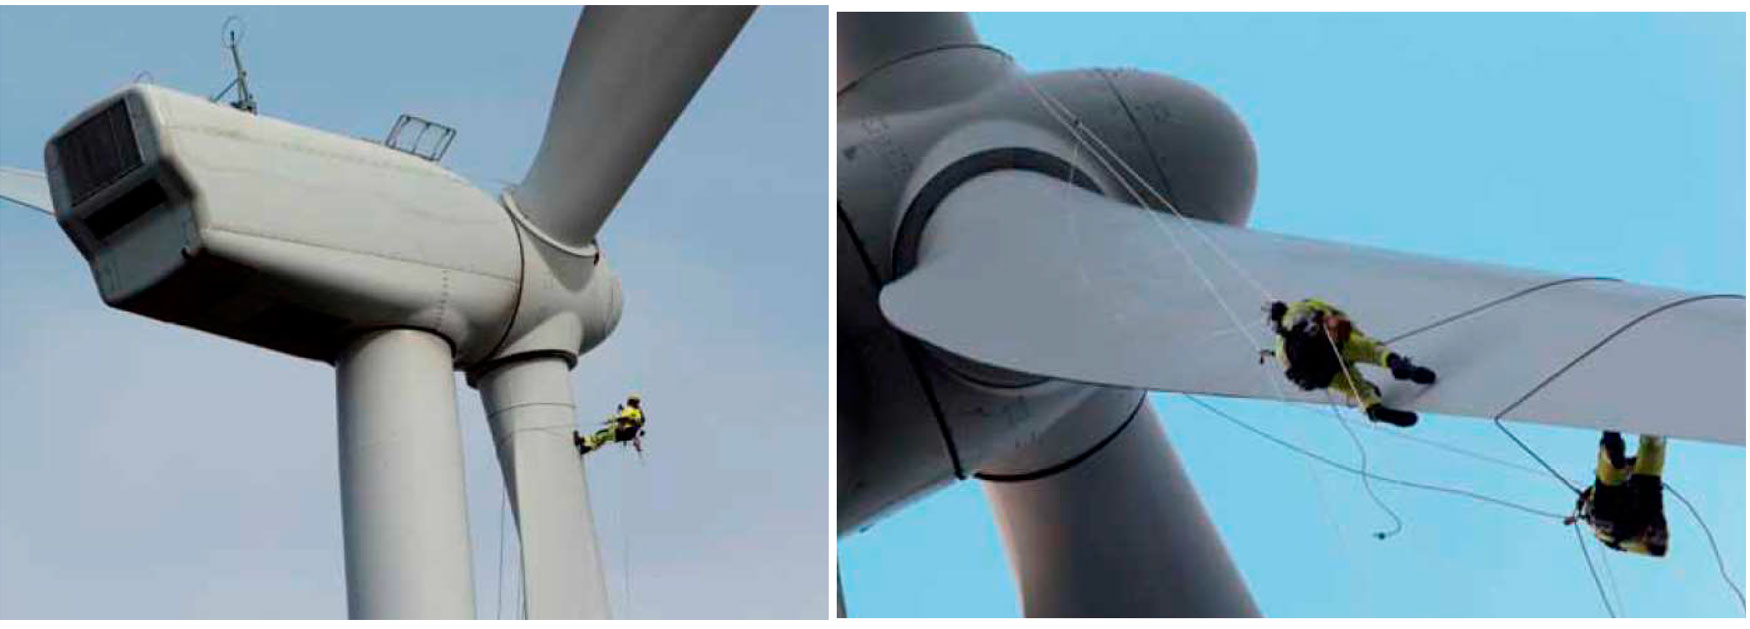 Figura 2. Ejemplos de trabajos verticales en un aerogenerador (Fuente: Guía para el uso de cuerdas en trabajos verticales de AEE)...